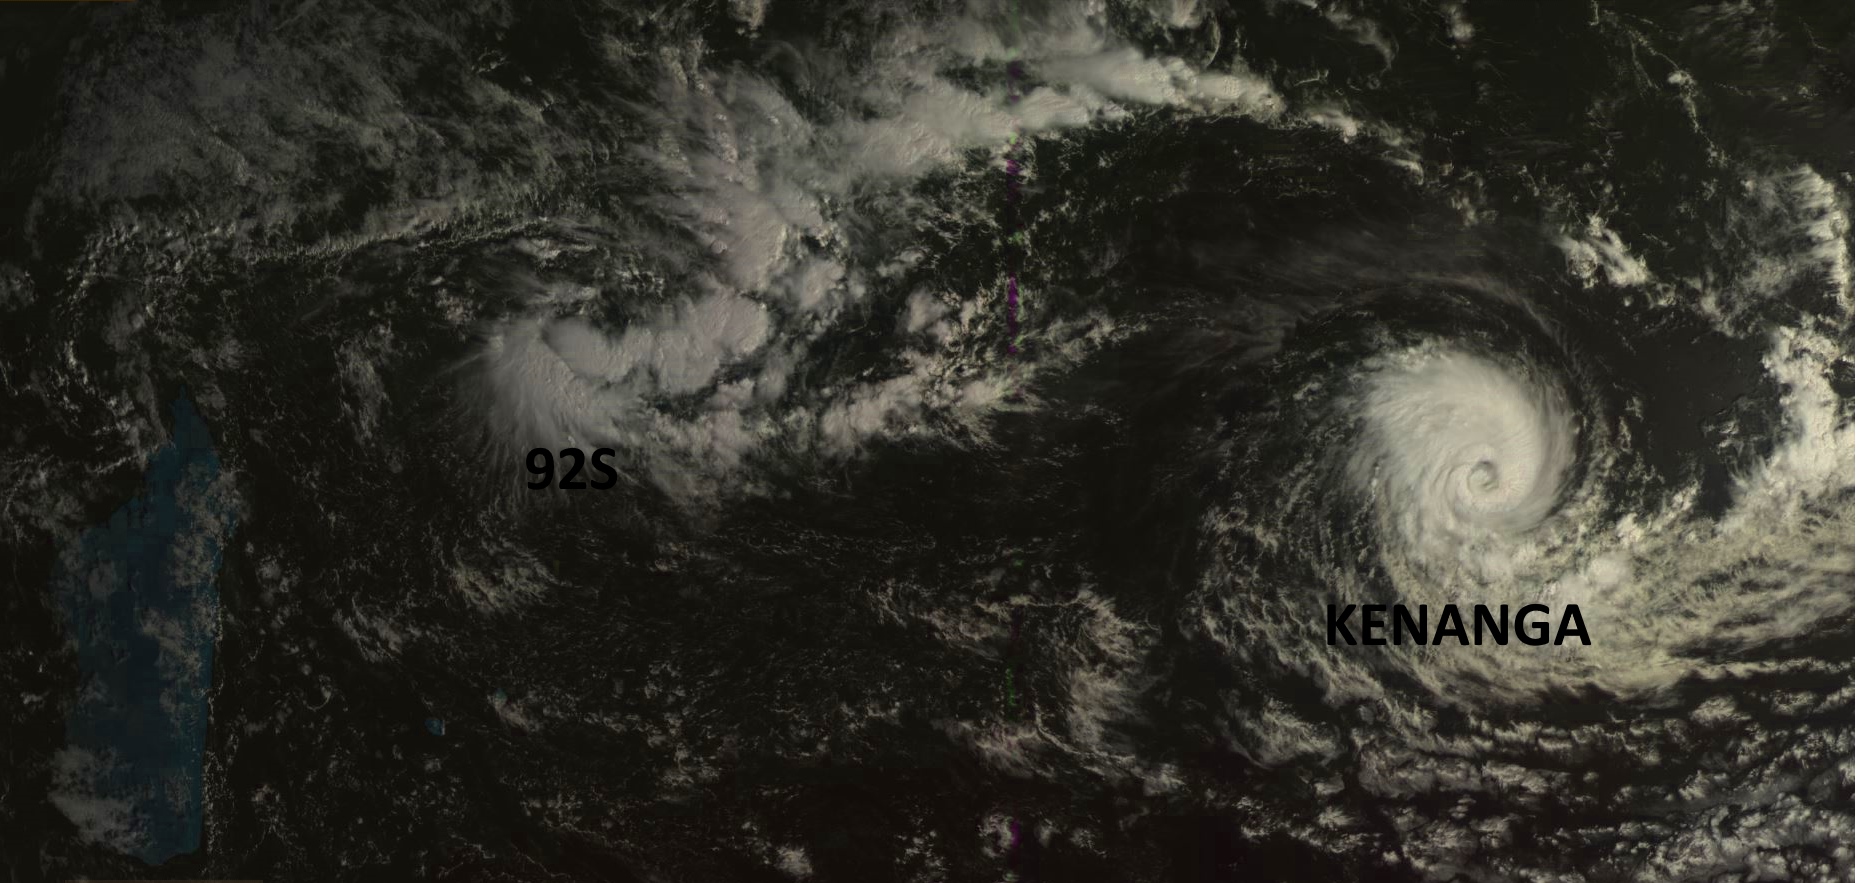 Sur la droite de la photo sat: KENANGA(06S) qui est quasiment au stade de "cyclone tropical". Au nord des Iles Soeurs on voit bien 92S qui se forme. Photo du satellite géostationnaire russe ce matin à 08h.